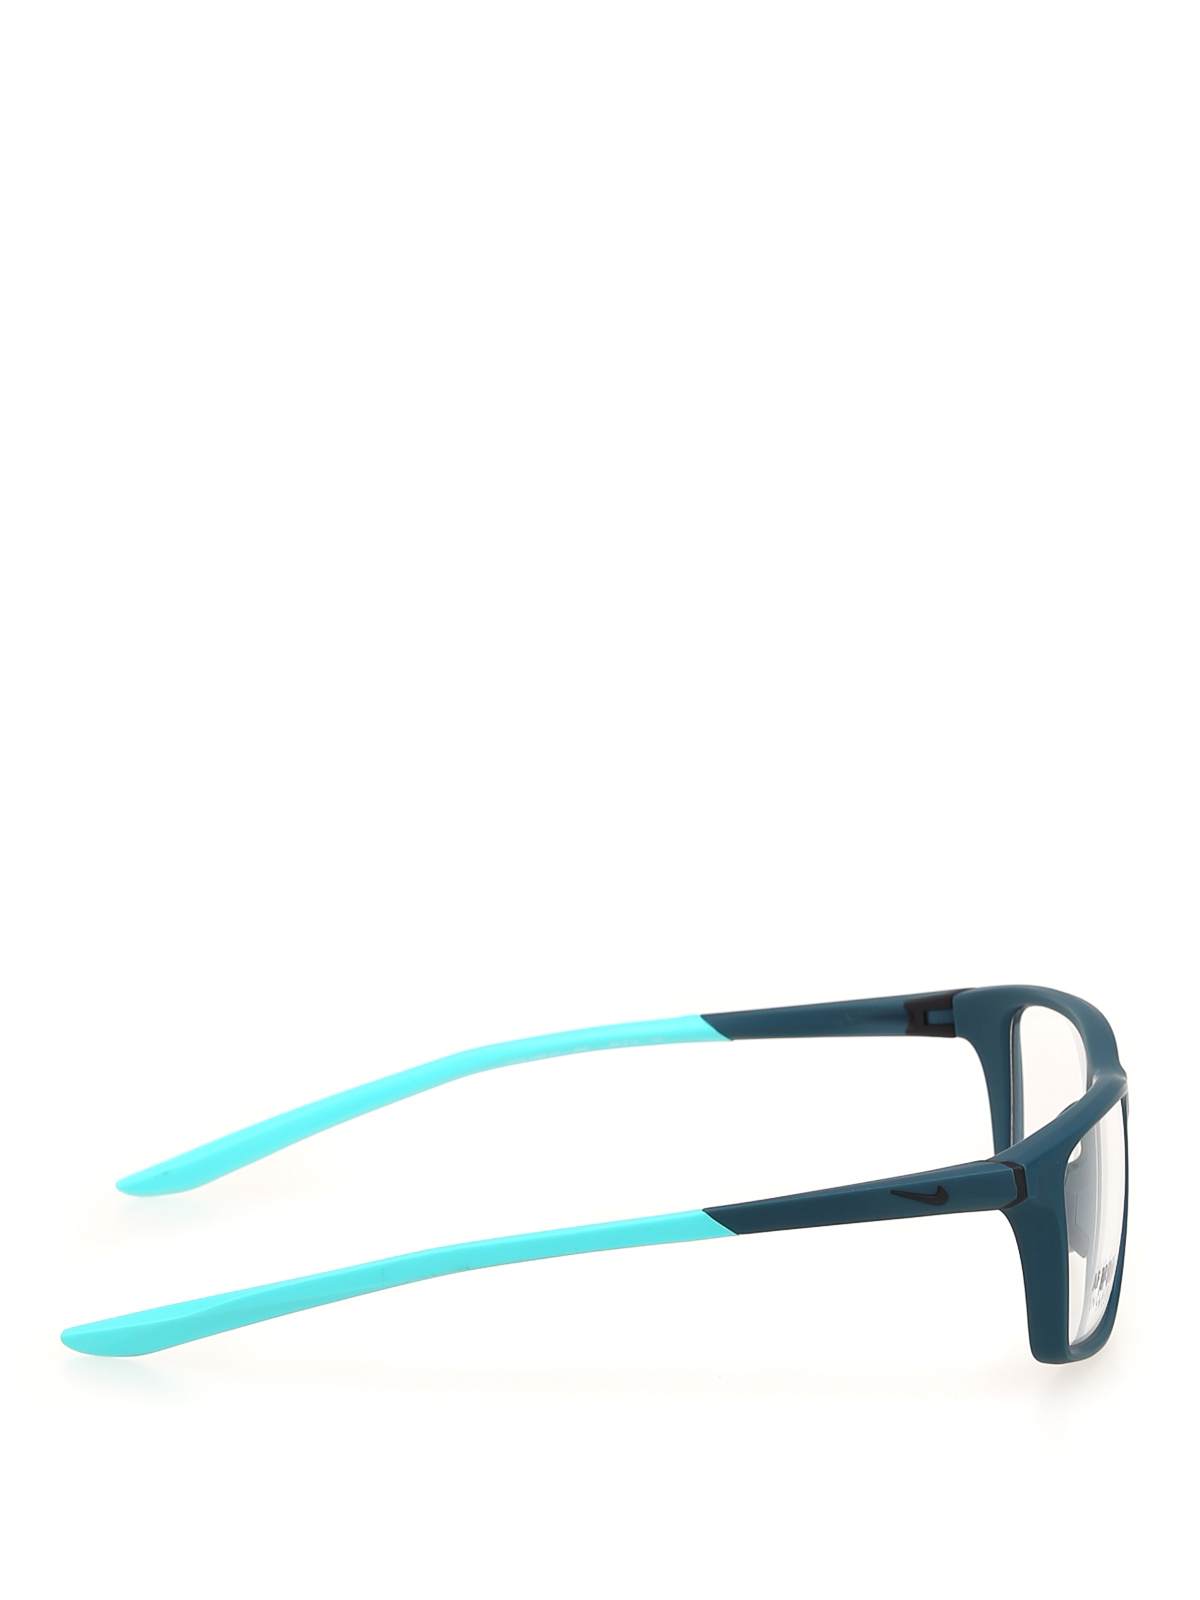 Supersonische snelheid Labe Rot Brillen Nike - Brillen - Blau - NIKE7084UF440 | THEBS [iKRIX]